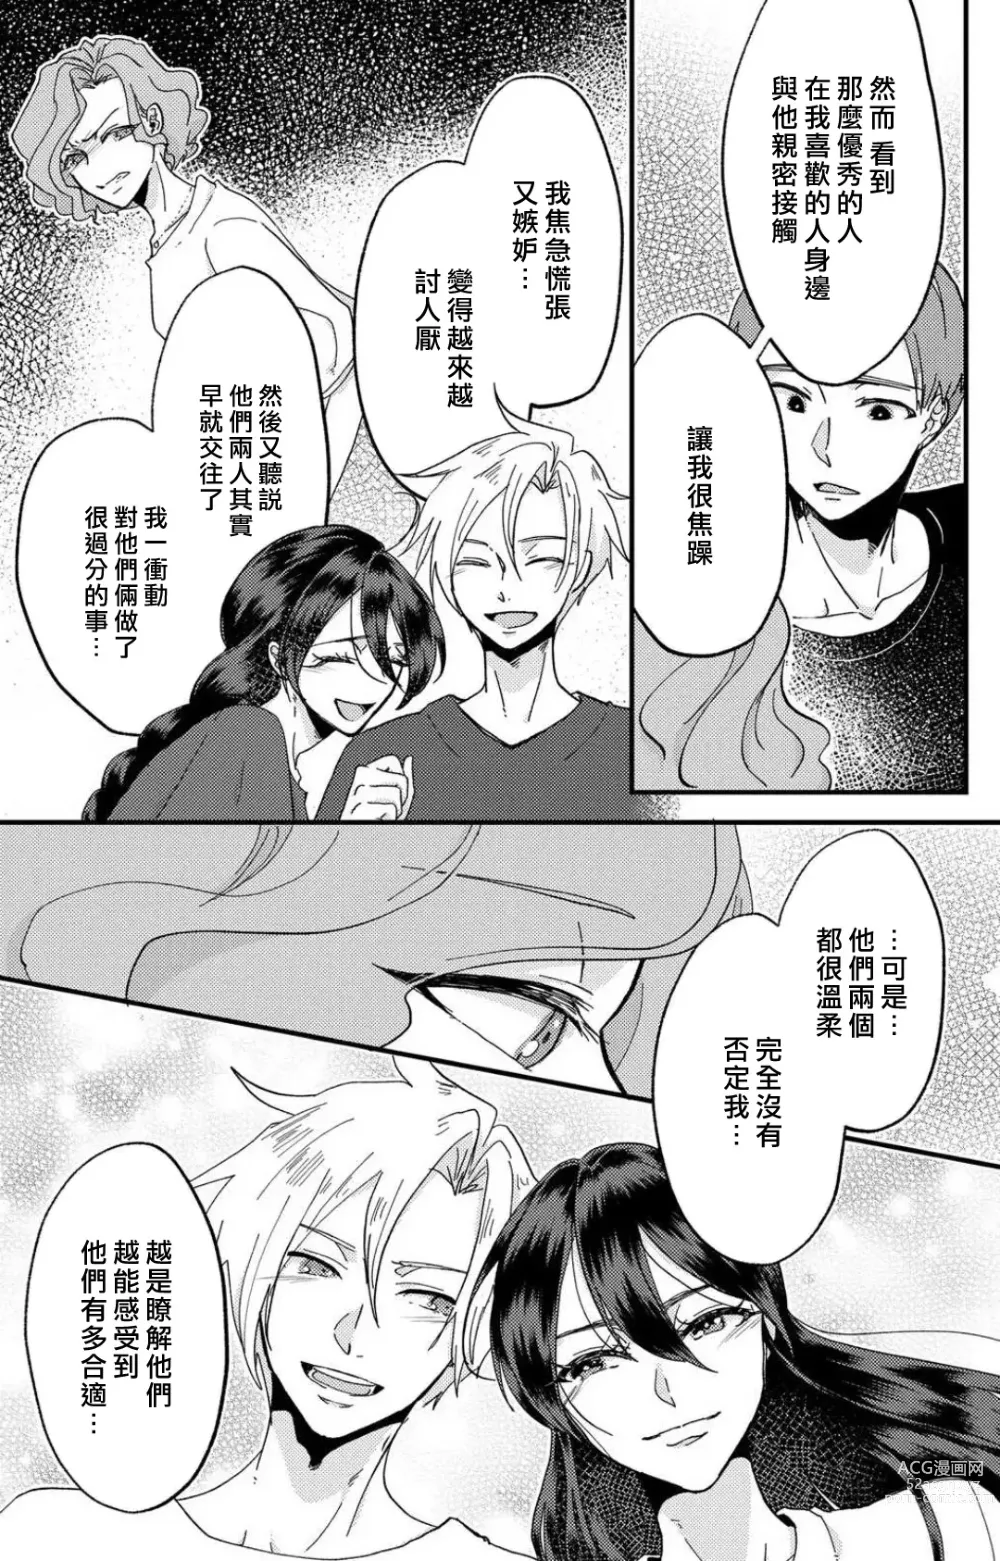 Page 166 of manga 败在他的眼泪攻势下 奈奈大小姐想被哭唧唧的男子推倒！ 1-5